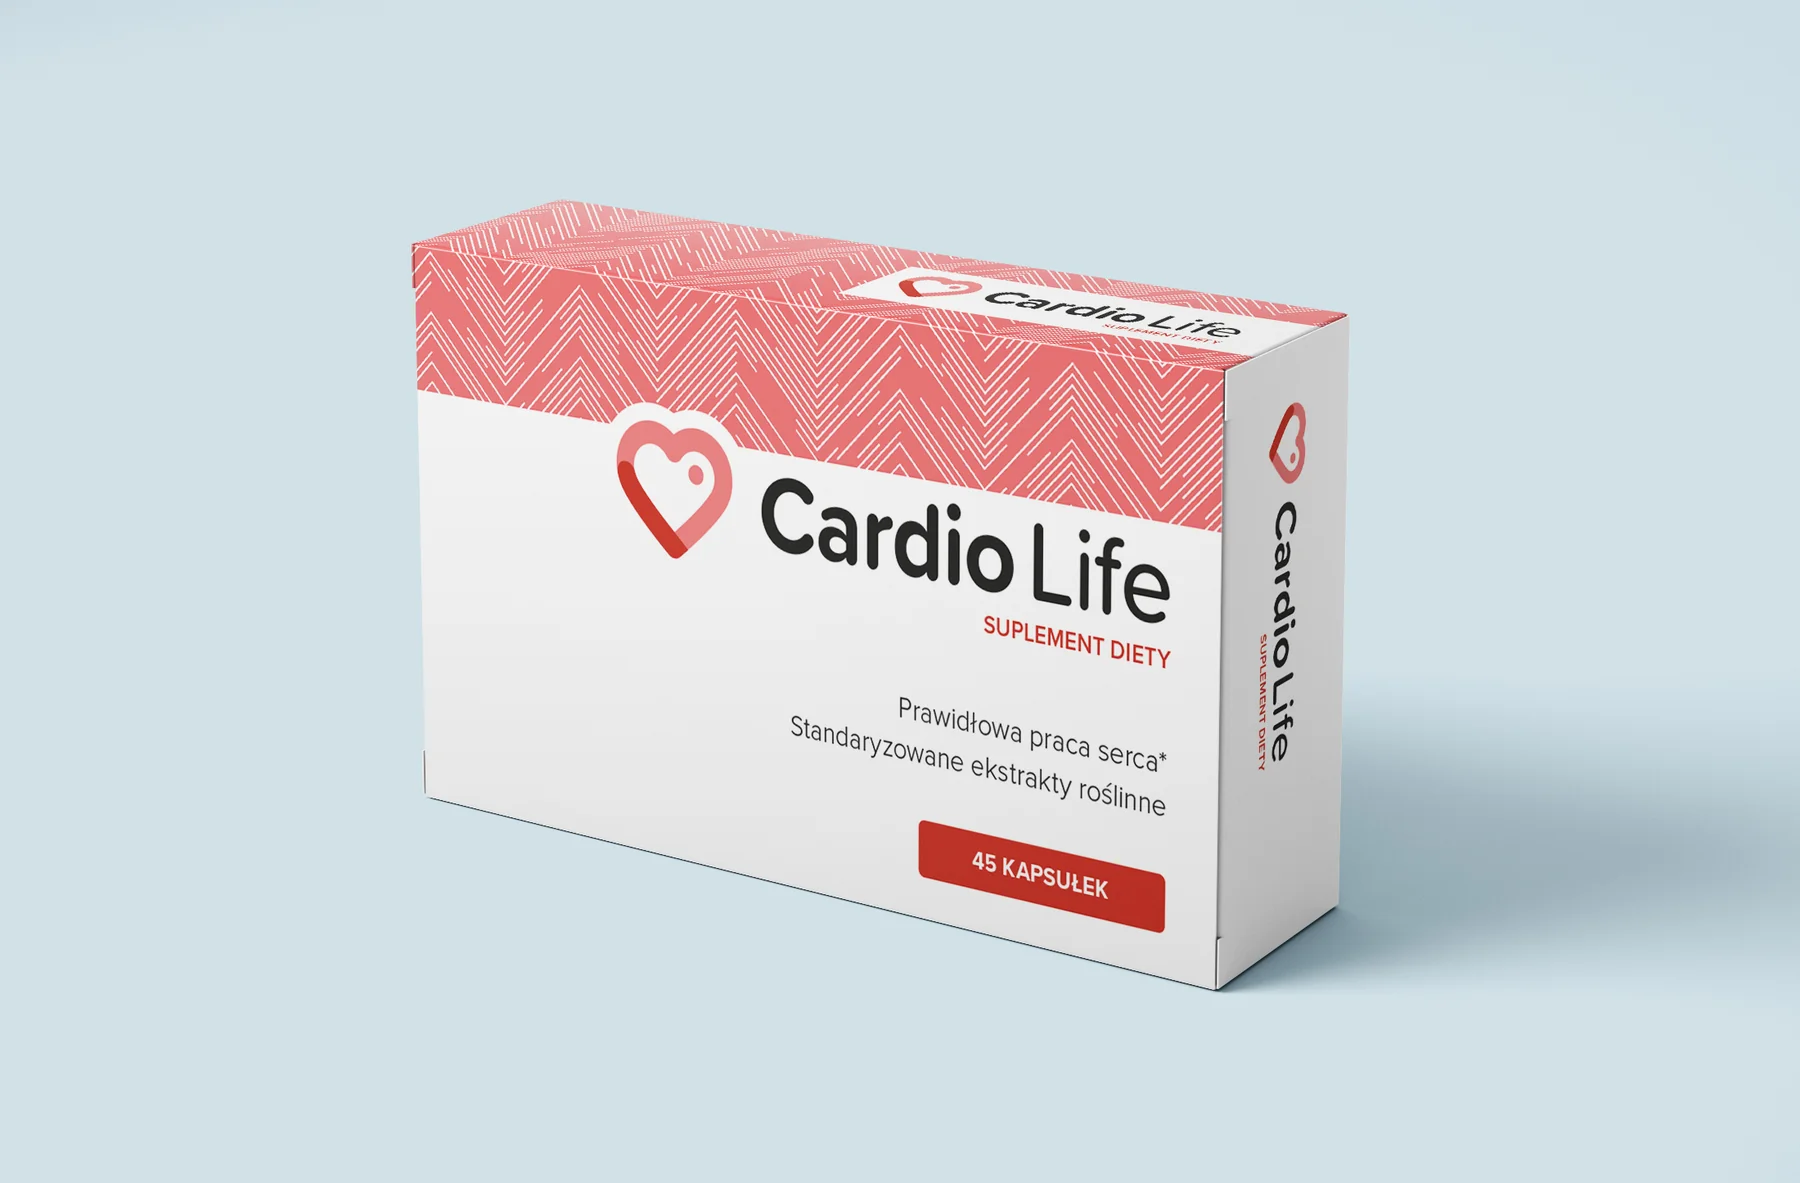 Cardio Life - in Apotheke - kaufen - bei DM - in Deutschland - in Hersteller-Website